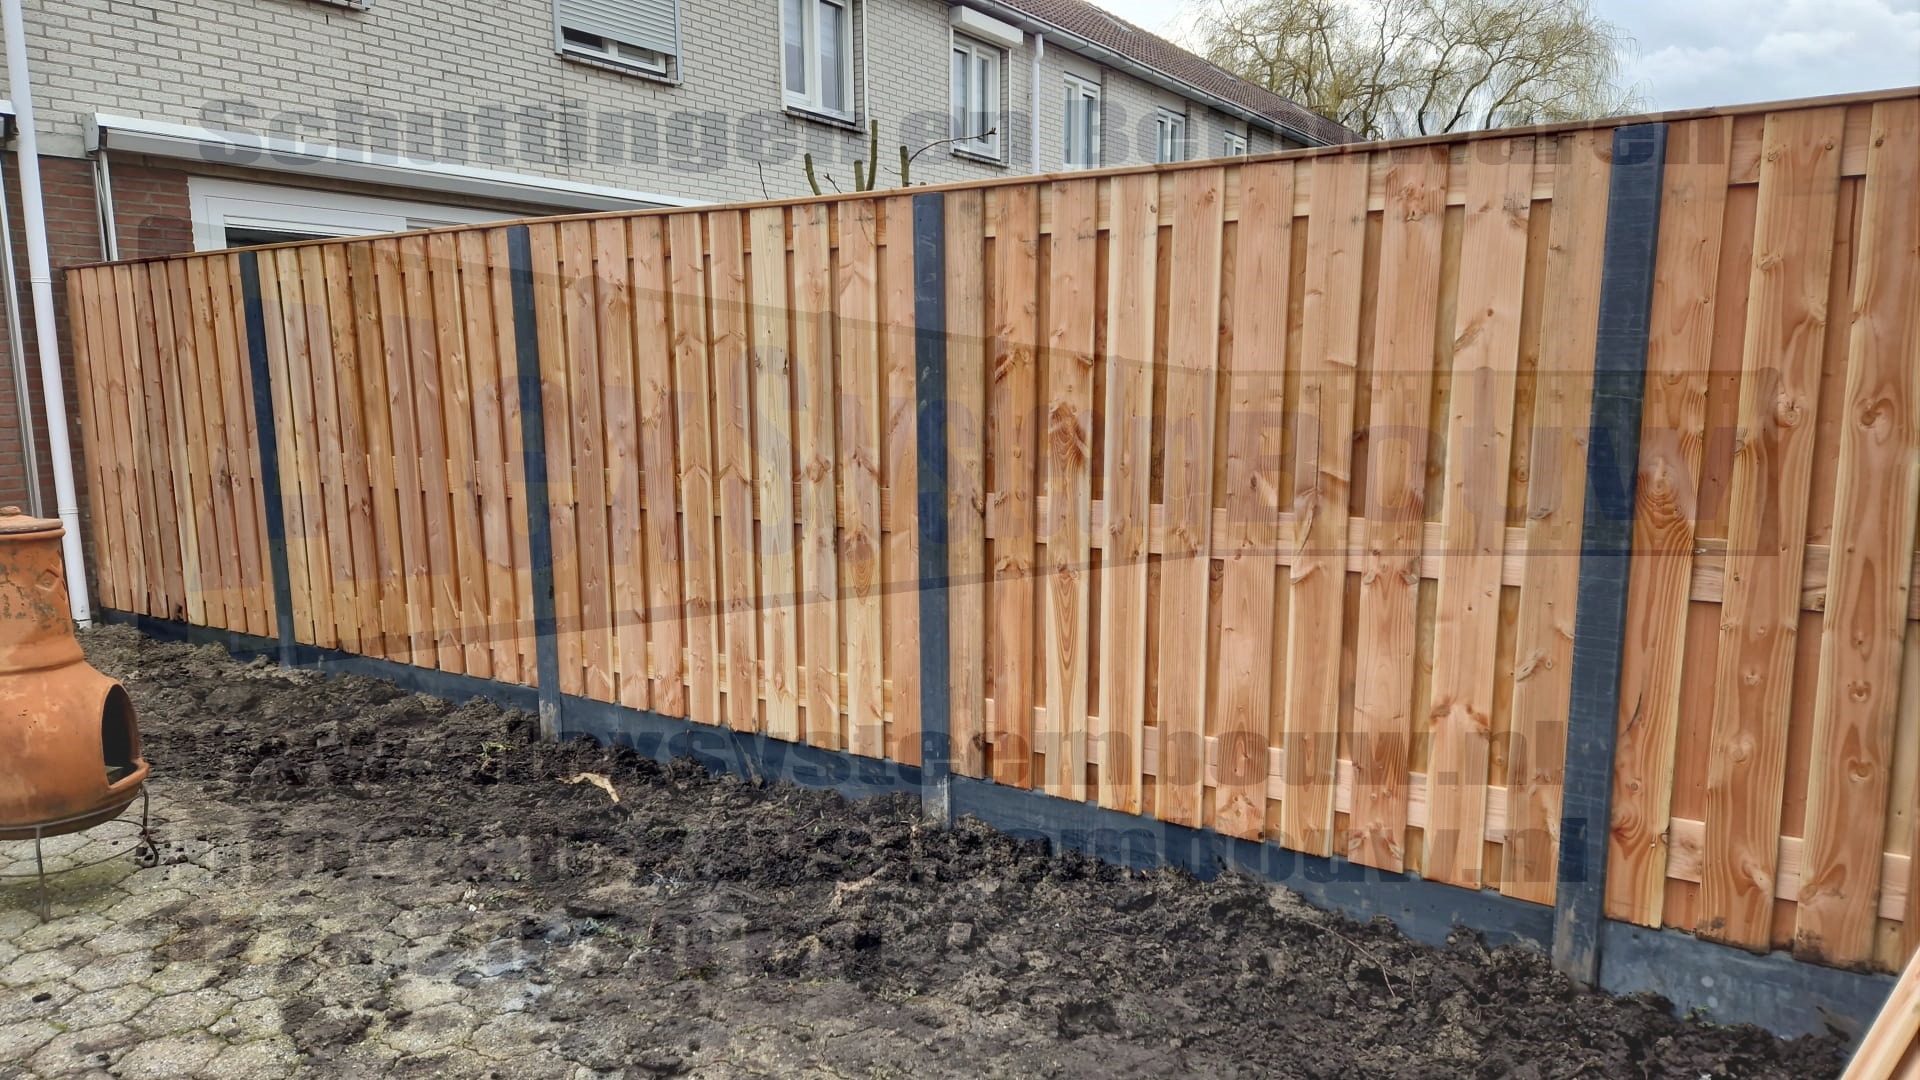 Deze hout beton schutting hebben wij voorzien van 21 planks lariks/douglas houten tuinschermen en zijn voorzien van één extra middenplank.